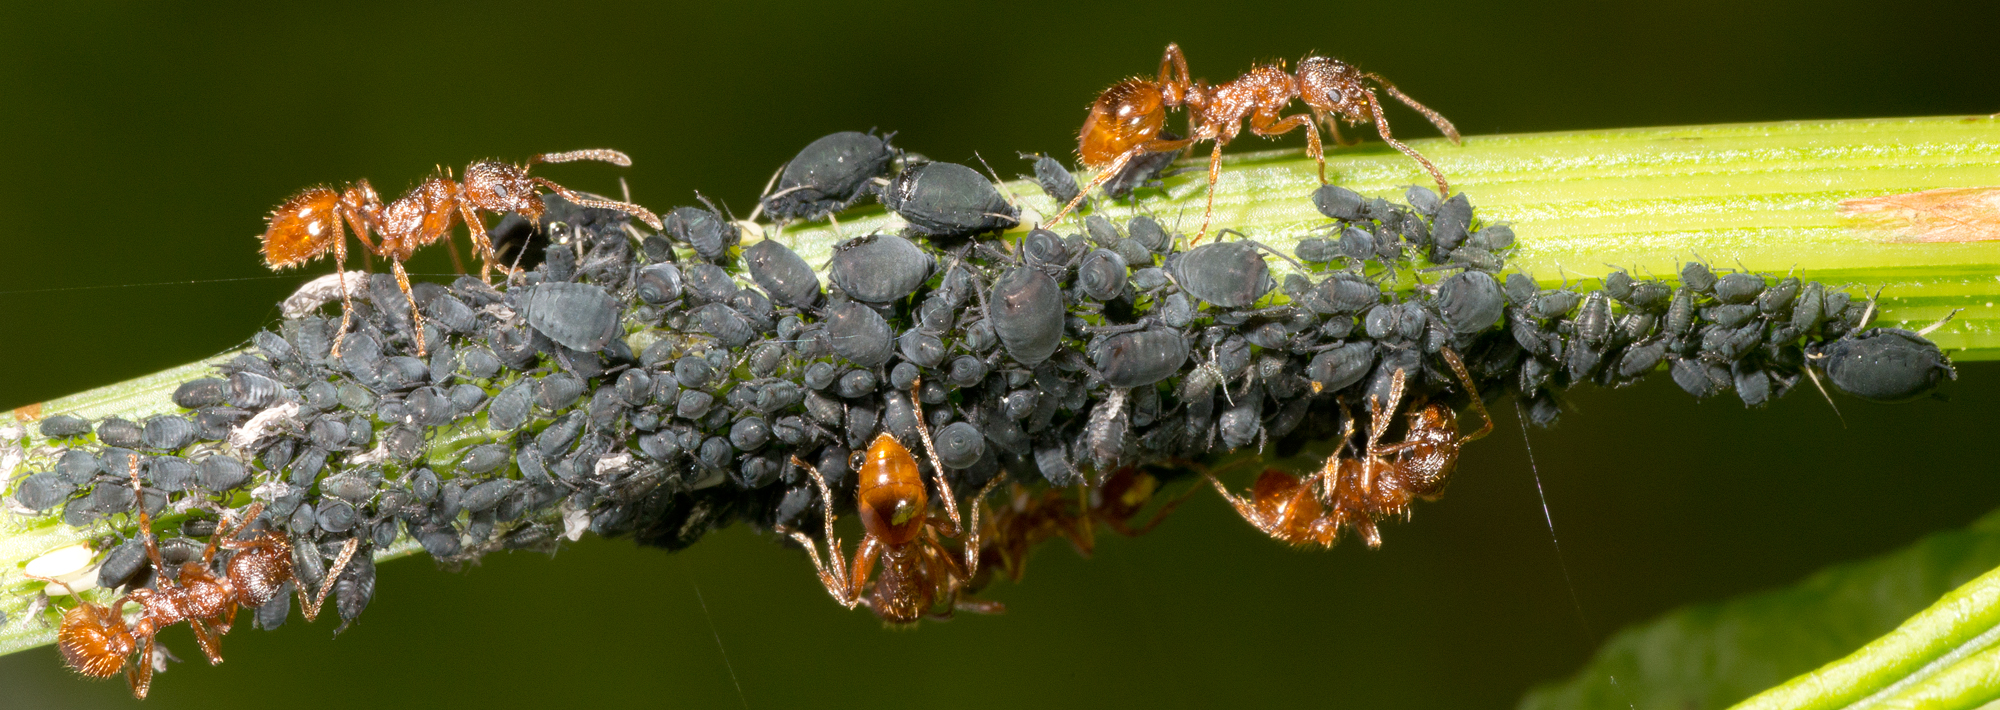 Aphid-herding Ants